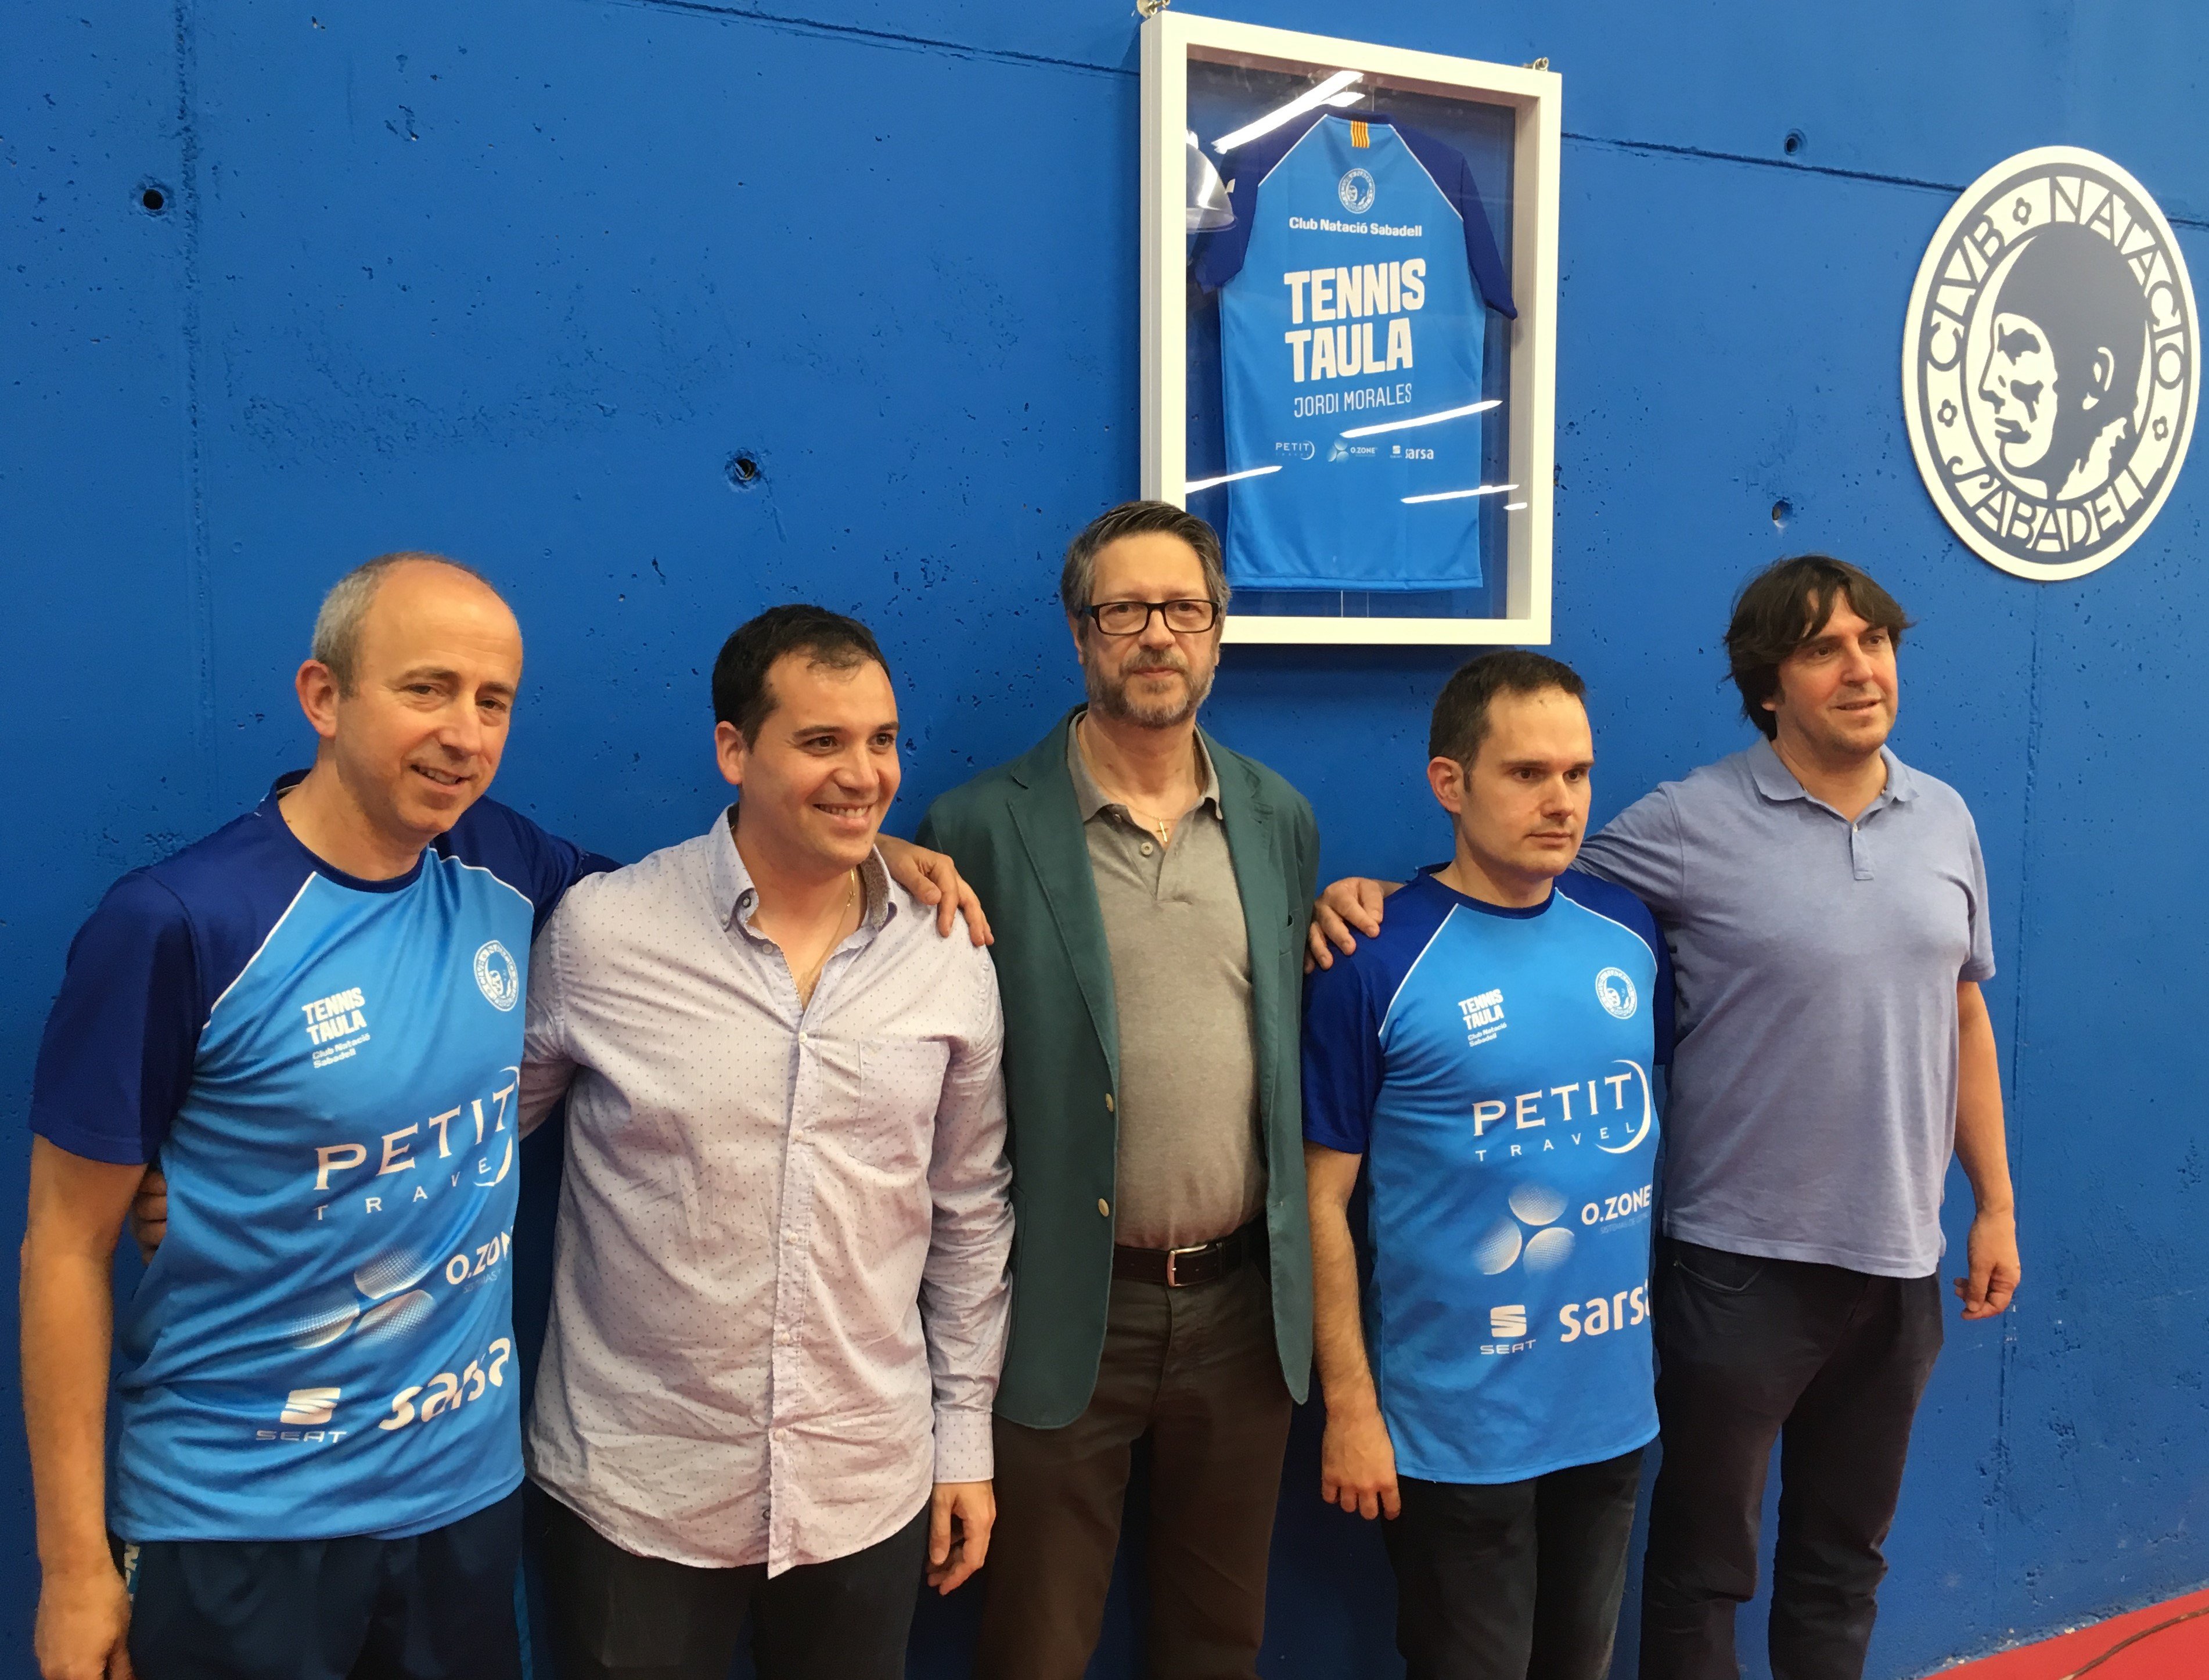 El CN Sabadell penja la samarreta del campió del món Jordi Morales a la sala de tennis de taula